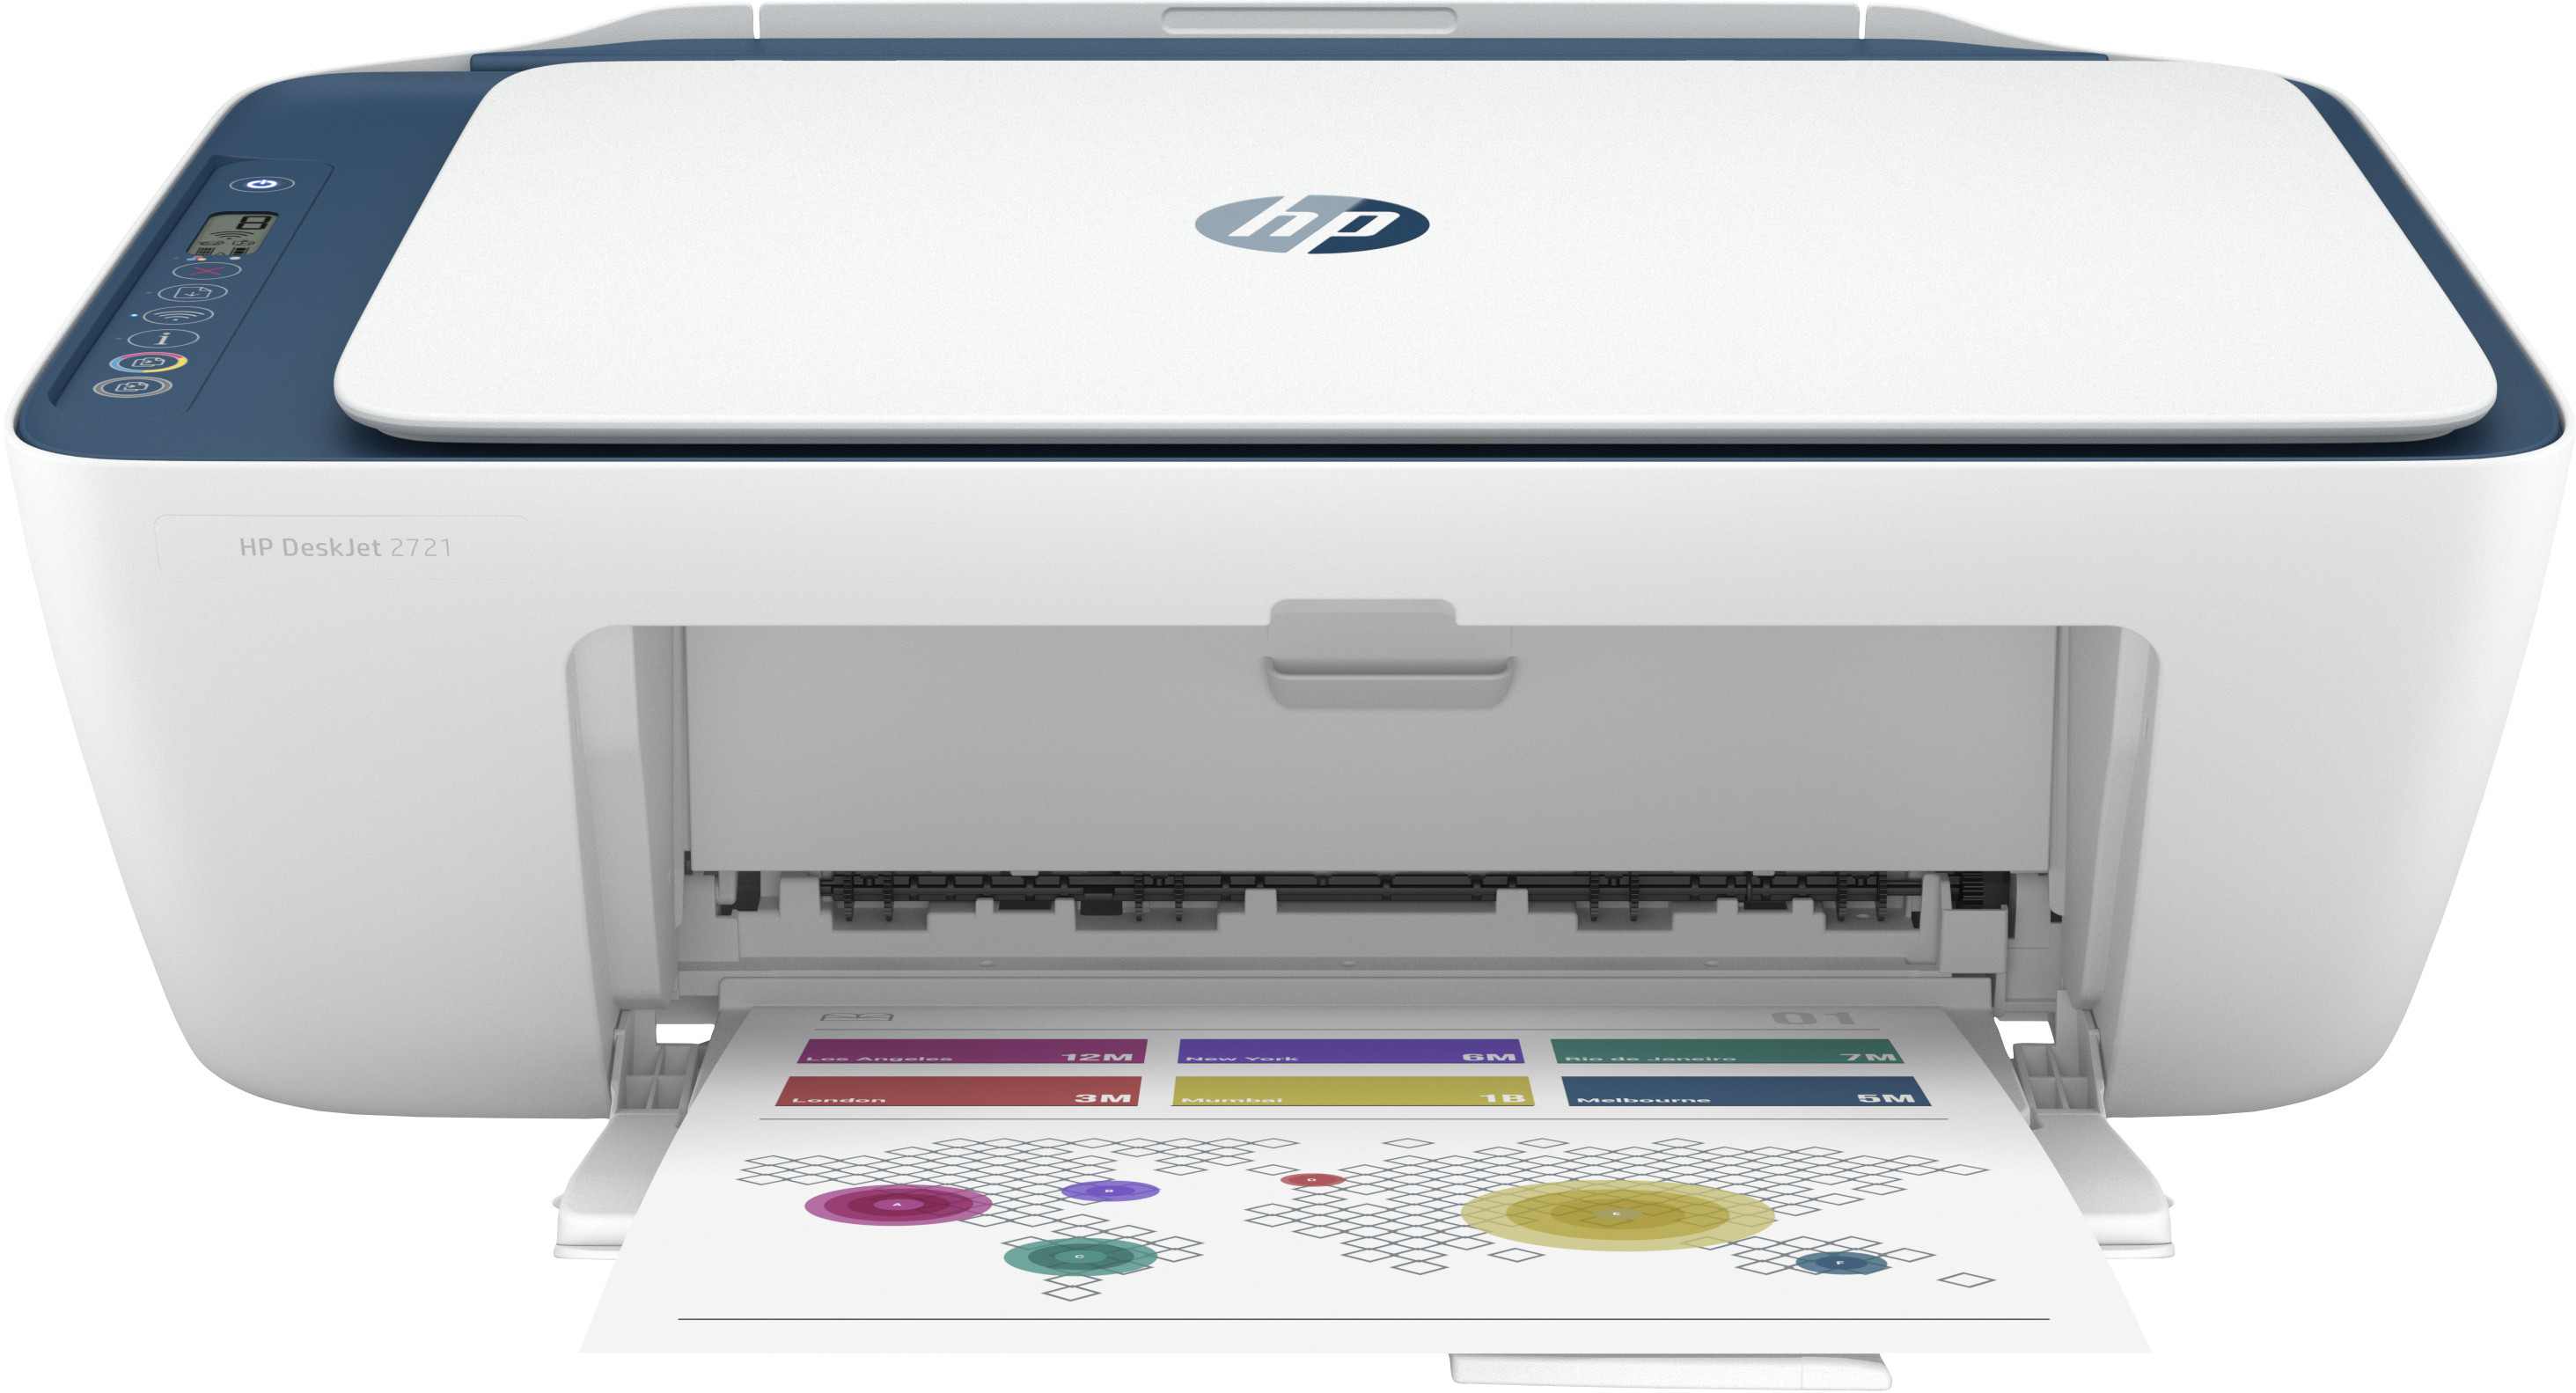 Hp Deskjet 2721 inyecciónwifiescánerblanca embalaje deteriorado impresora tinta color 7555 ppm bluetooth blanco 5.5 compatible con 7fr54b